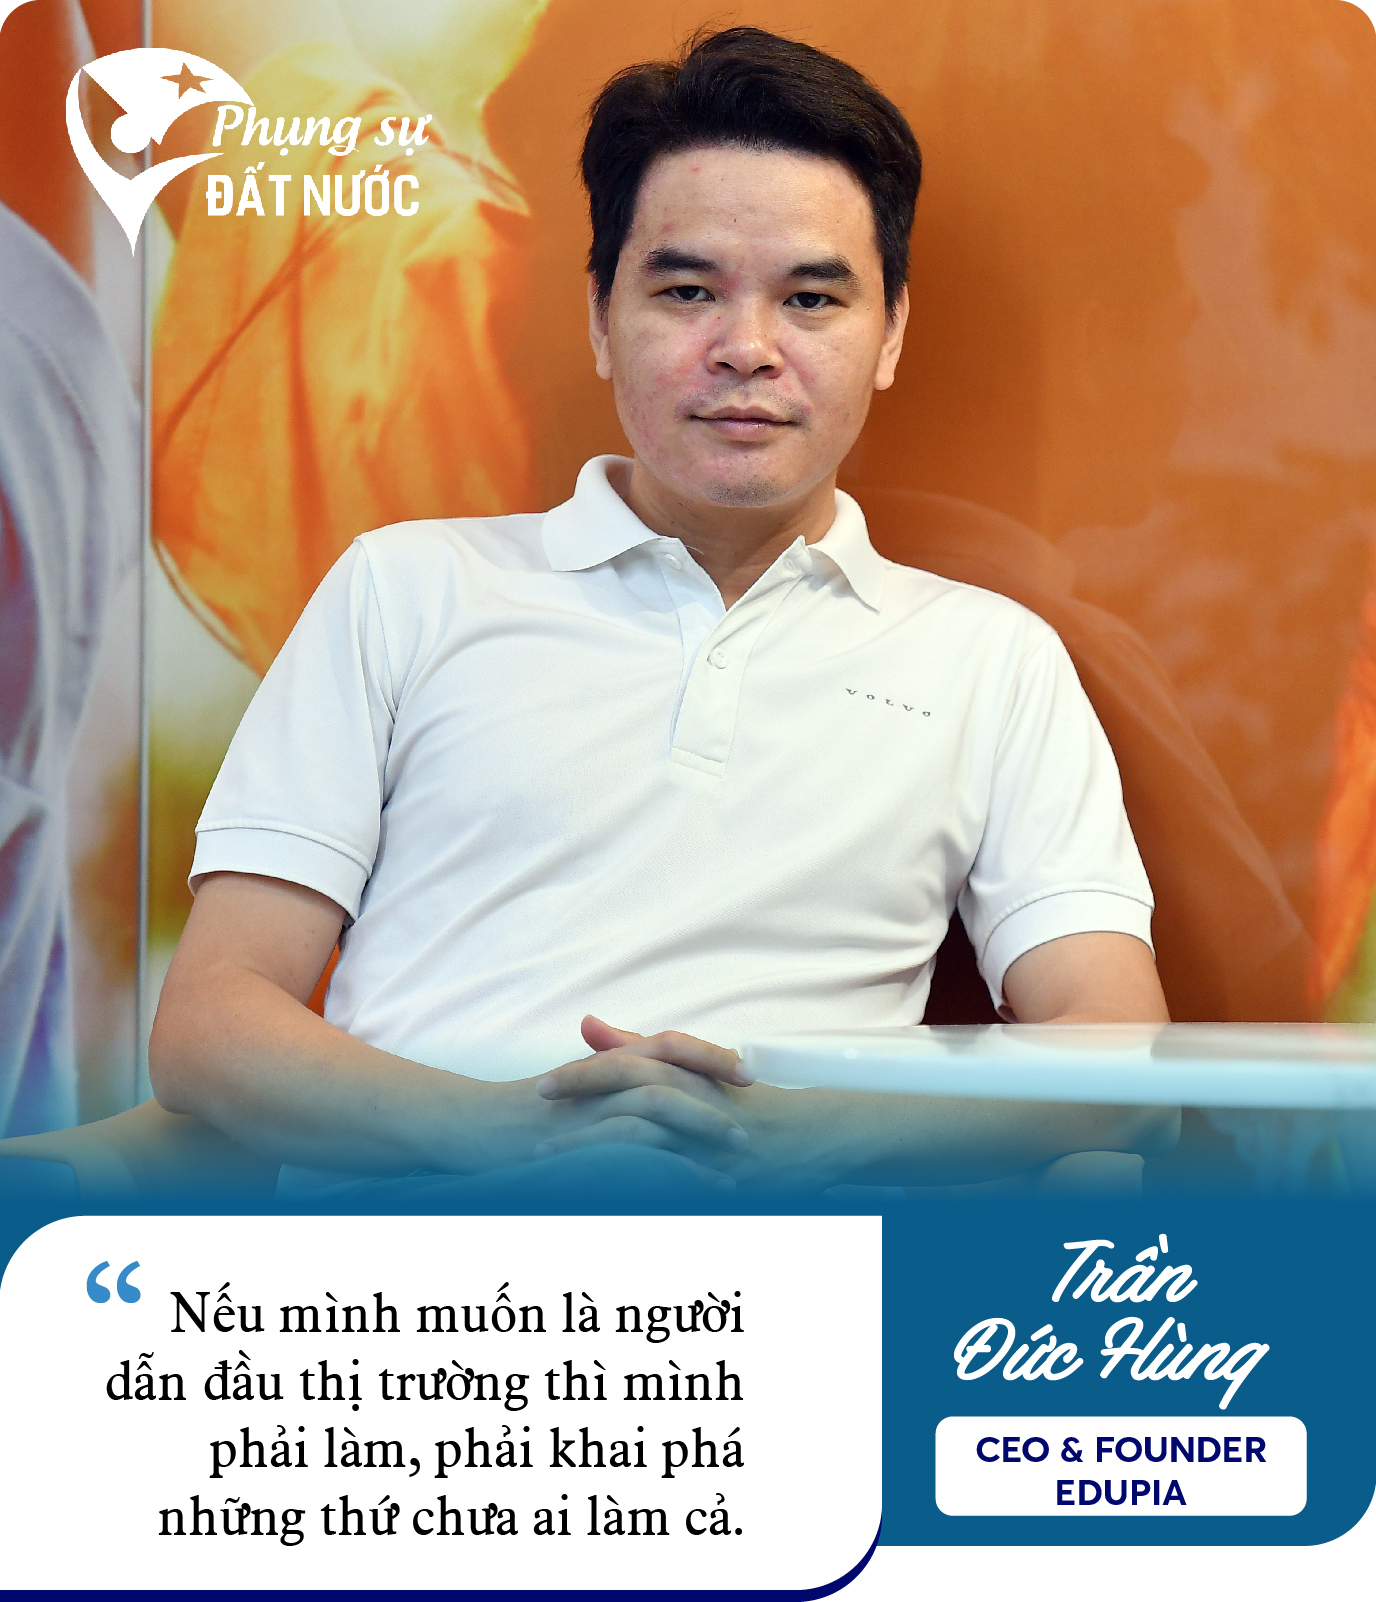 Cựu Giám đốc Digital của Viettel Telecom khởi nghiệp, lập nên Edtech dạy tiếng Anh số 1 Việt Nam: Tìm thấy cơ hội khi về quê, mơ thành ‘cận kỳ lân’ năm 2025 - Ảnh 14.